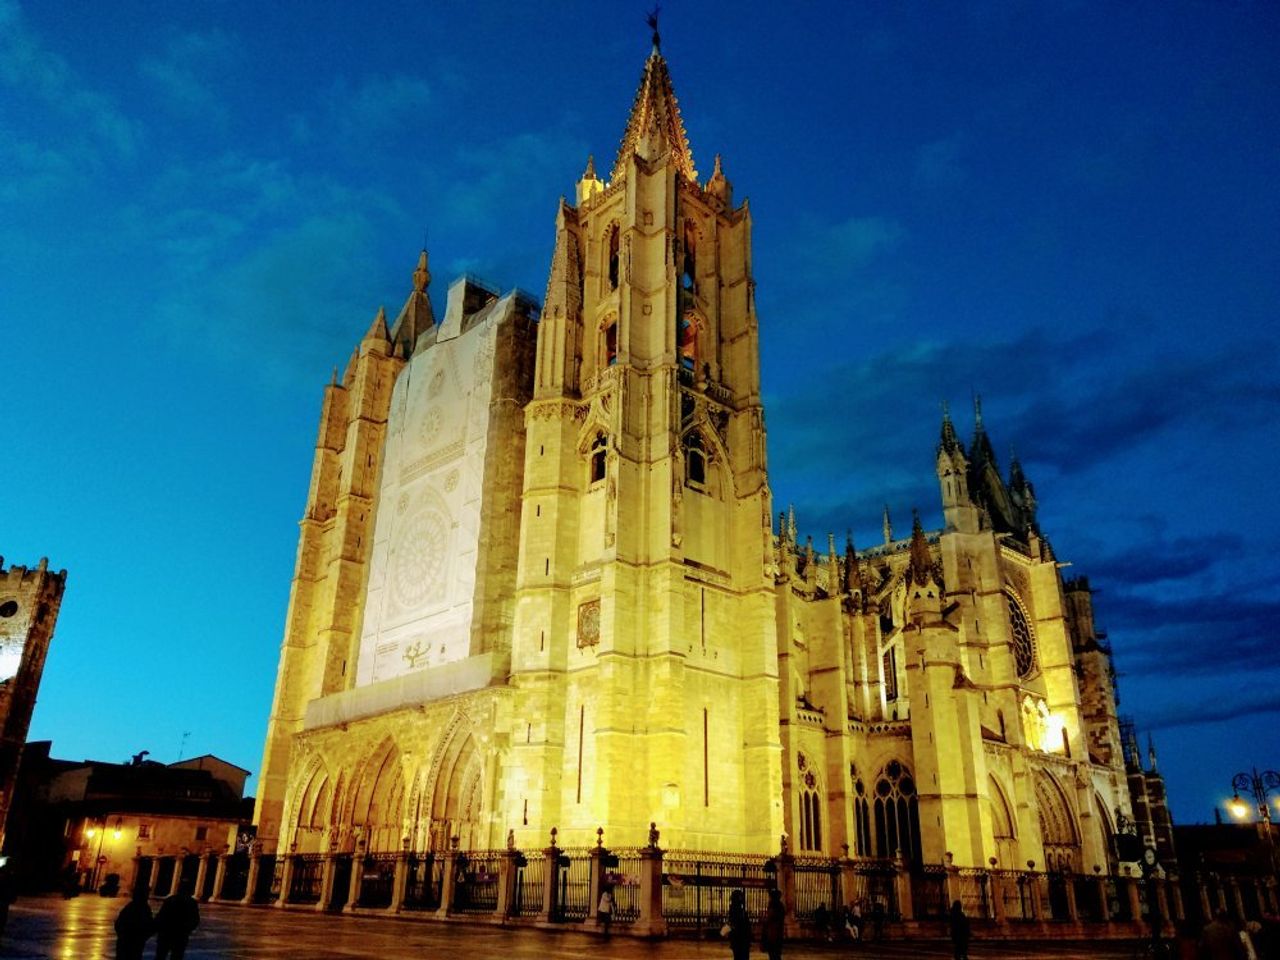 Descubre la majestuosa belleza de la Catedral de León.